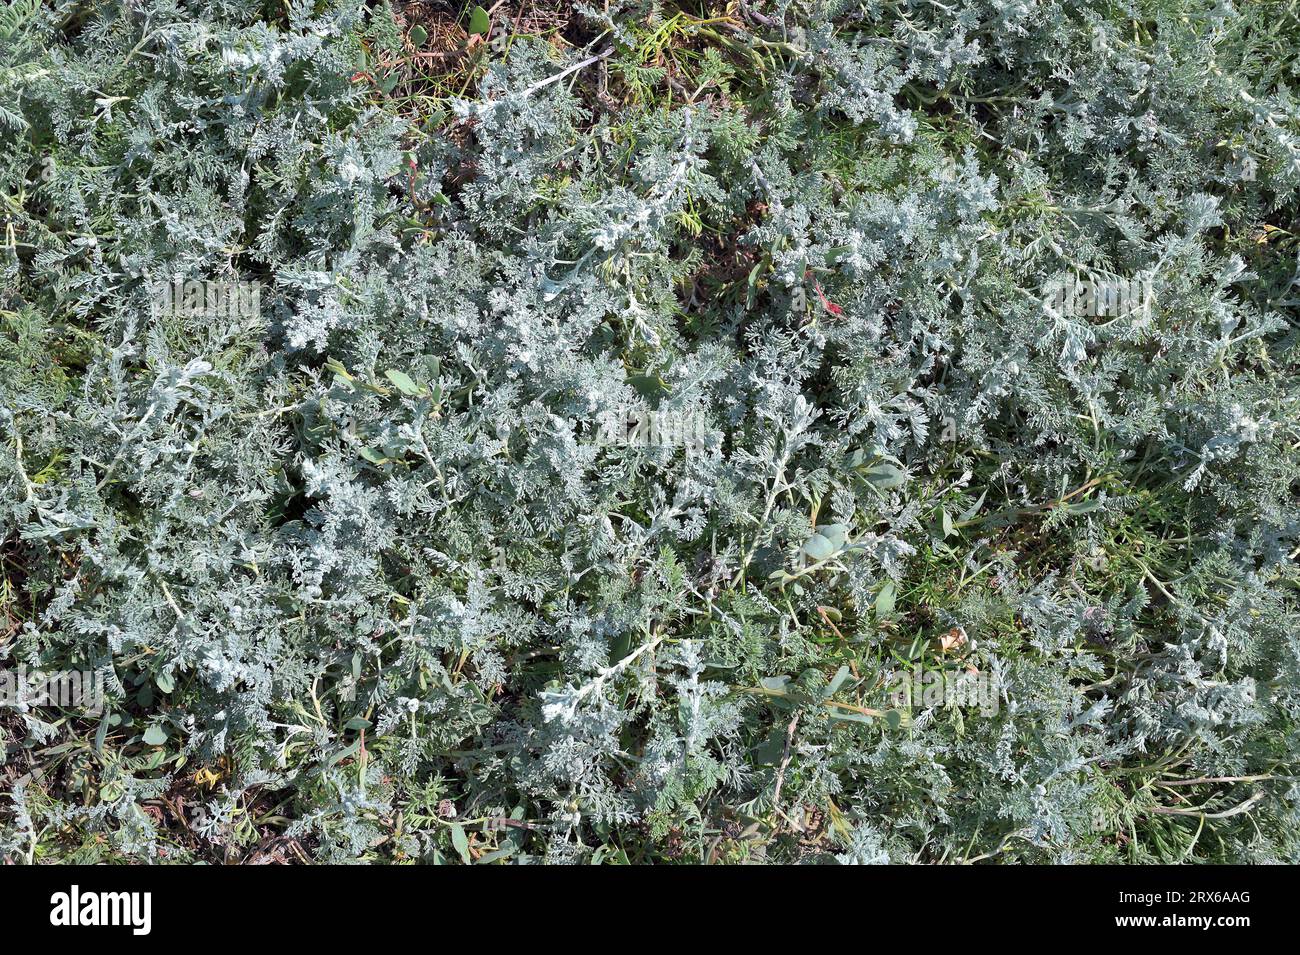 sea wormwood (Artemisia maritima),North Sea,Germany Stock Photo